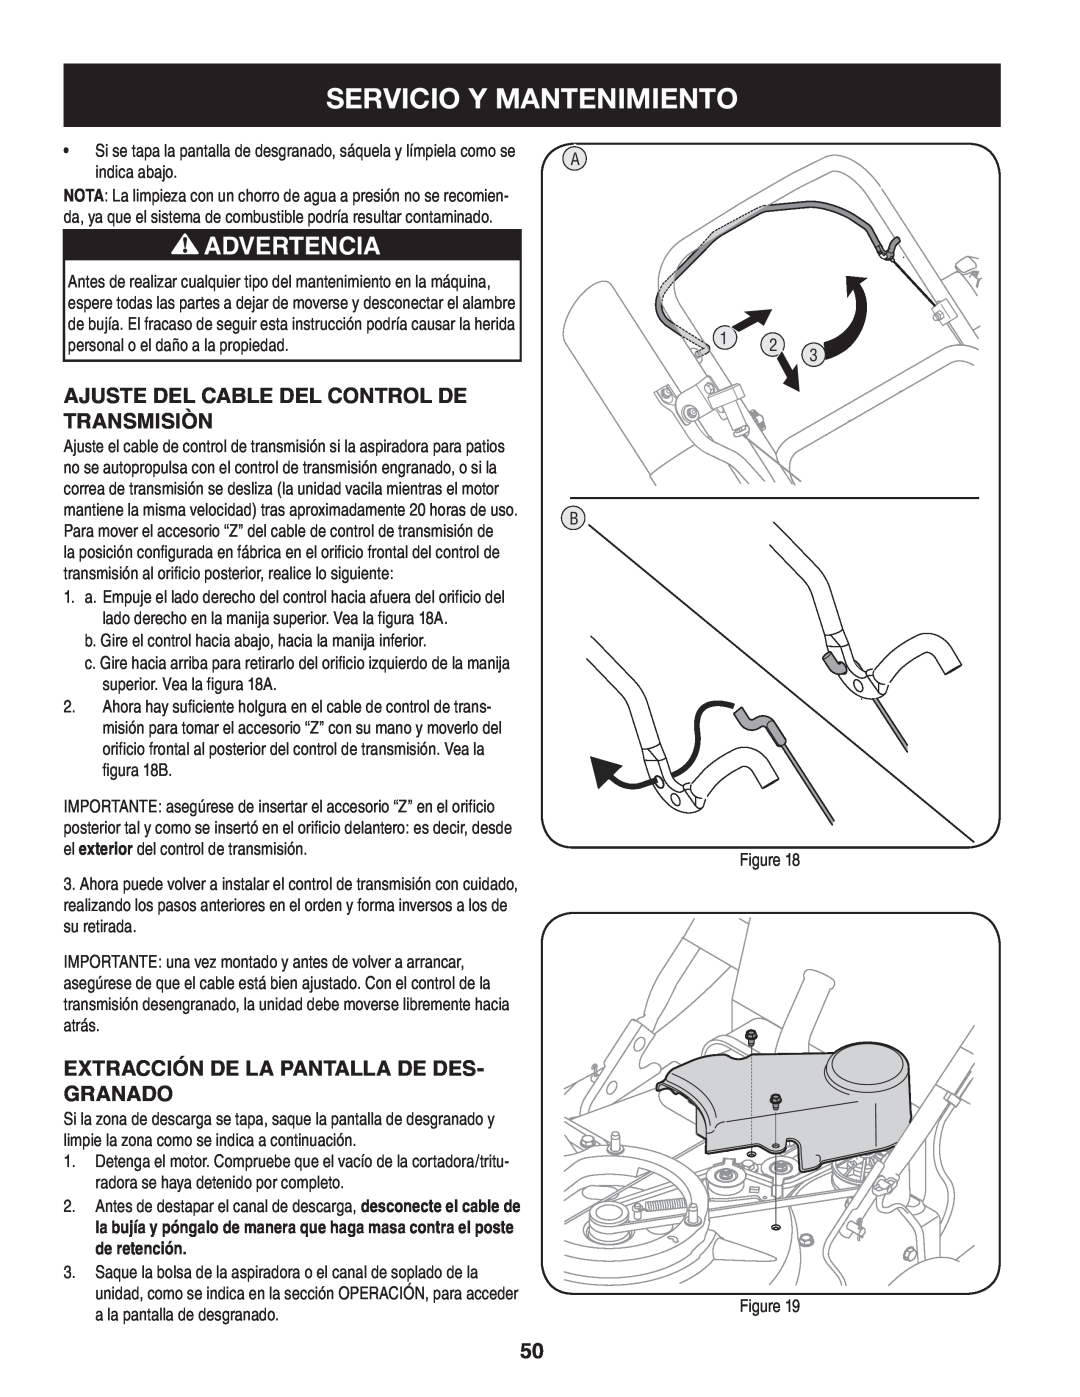 Craftsman 247.77013.0 manual Servicio Y Mantenimiento, Advertencia, Ajuste del Cable del Control de Transmisiòn 